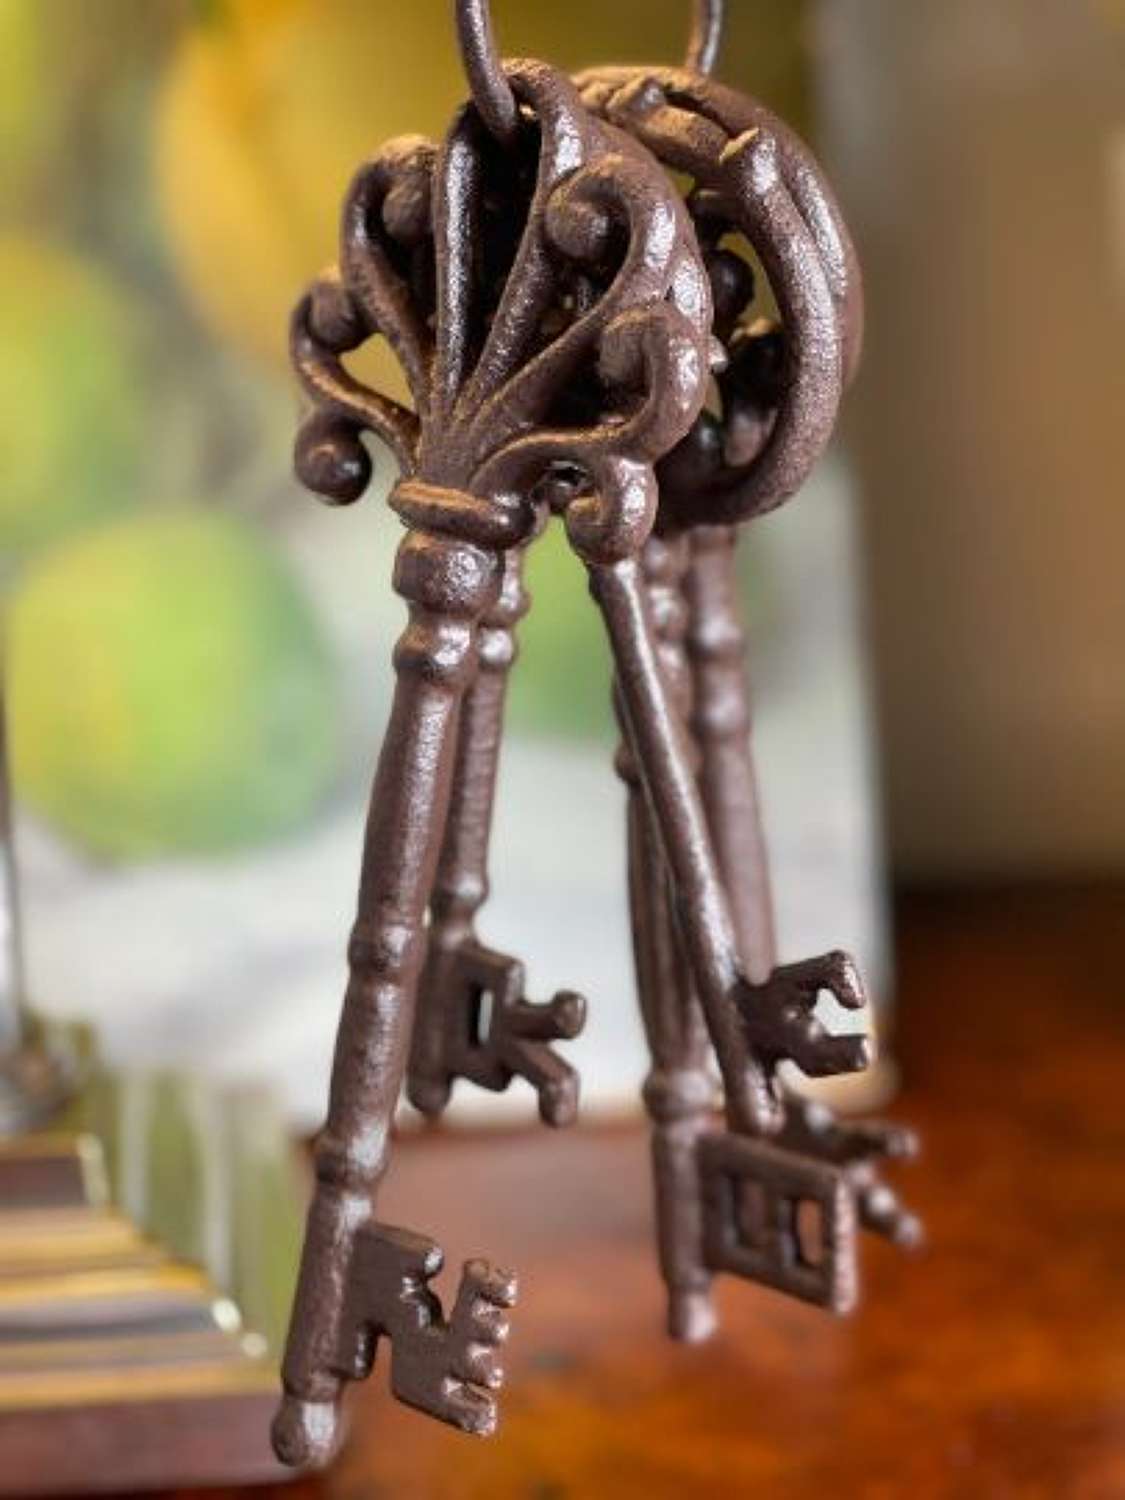 Cast iron jailers keys